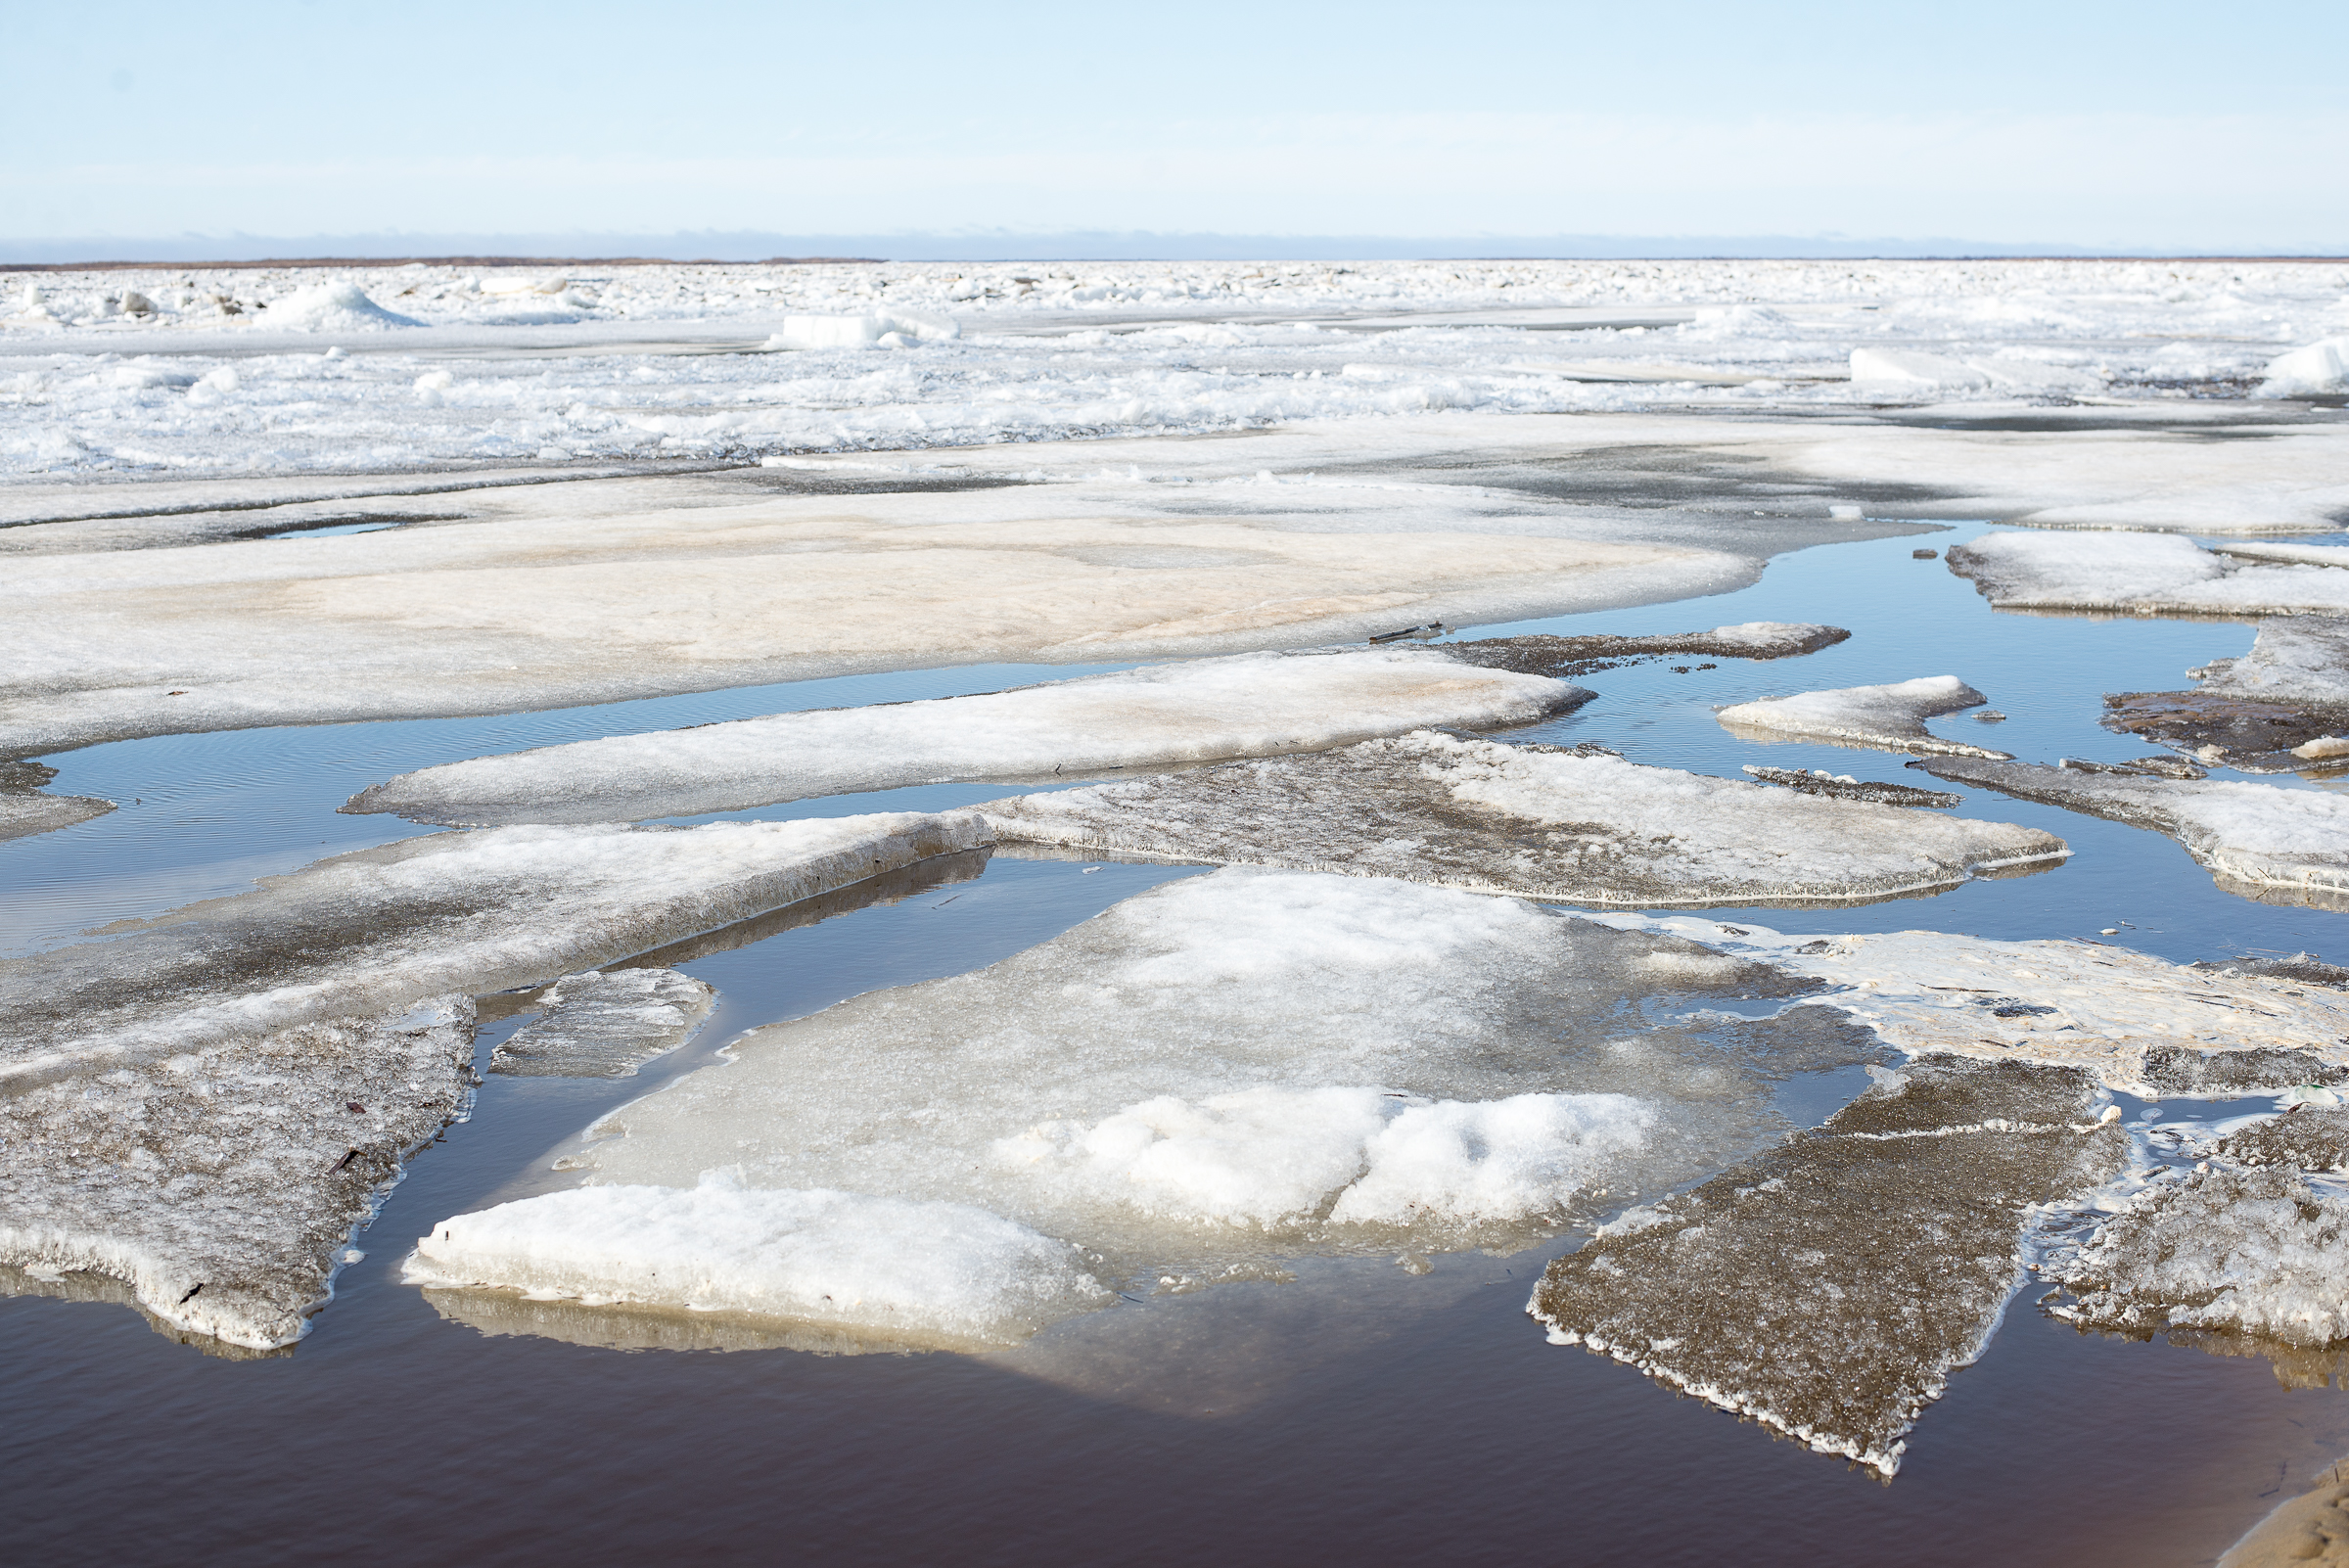 Начало ледохода реки. Заторы льда на реке Печора.